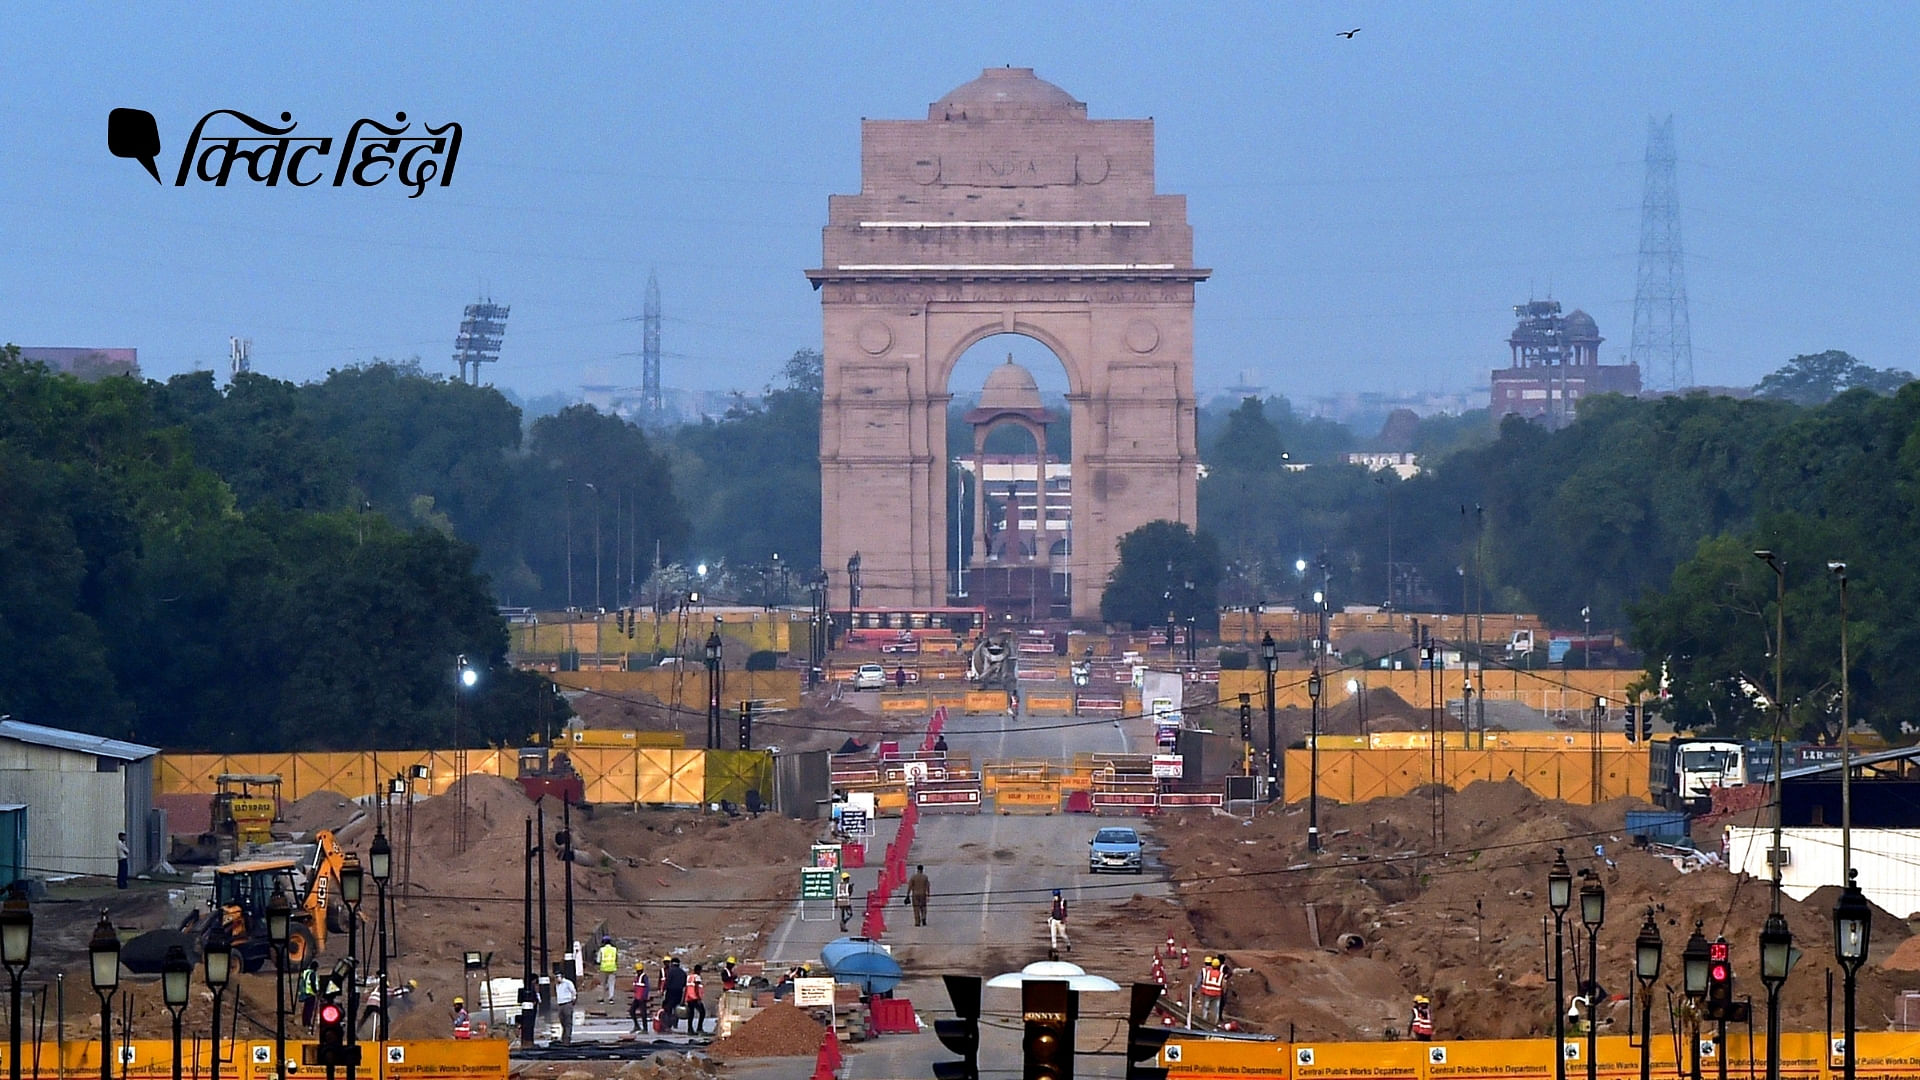 सेंट्रल विस्टा रीडेवलपमेंट प्रोजेक्ट के तहत दिल्ली के राजपथ पर काम जारी, 6 मई, 2021&nbsp;